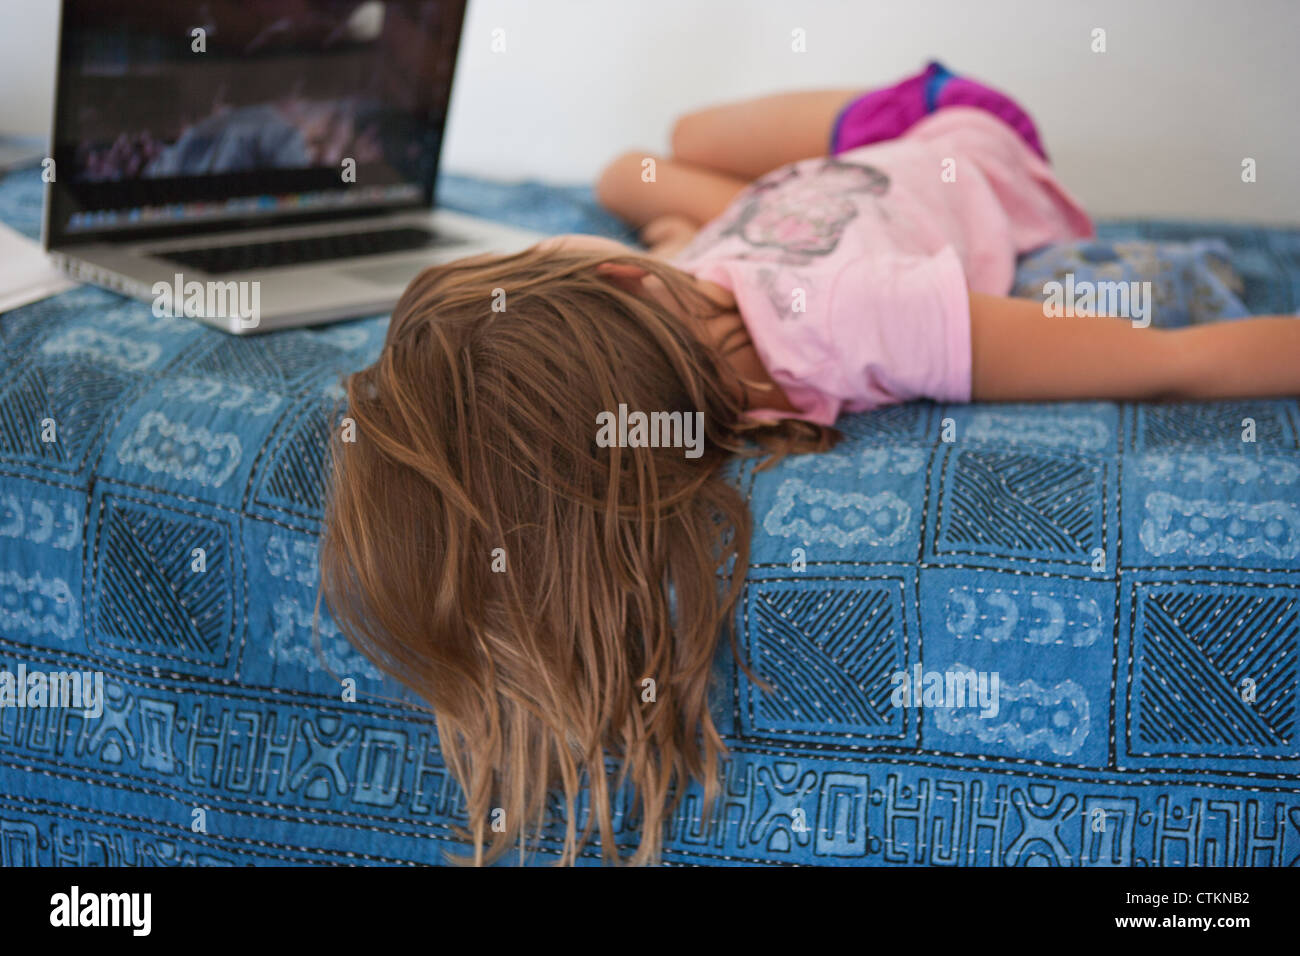 Sieben Jahre altes Mädchen im Bett einen Film auf einem Laptop-Computer. Stockfoto